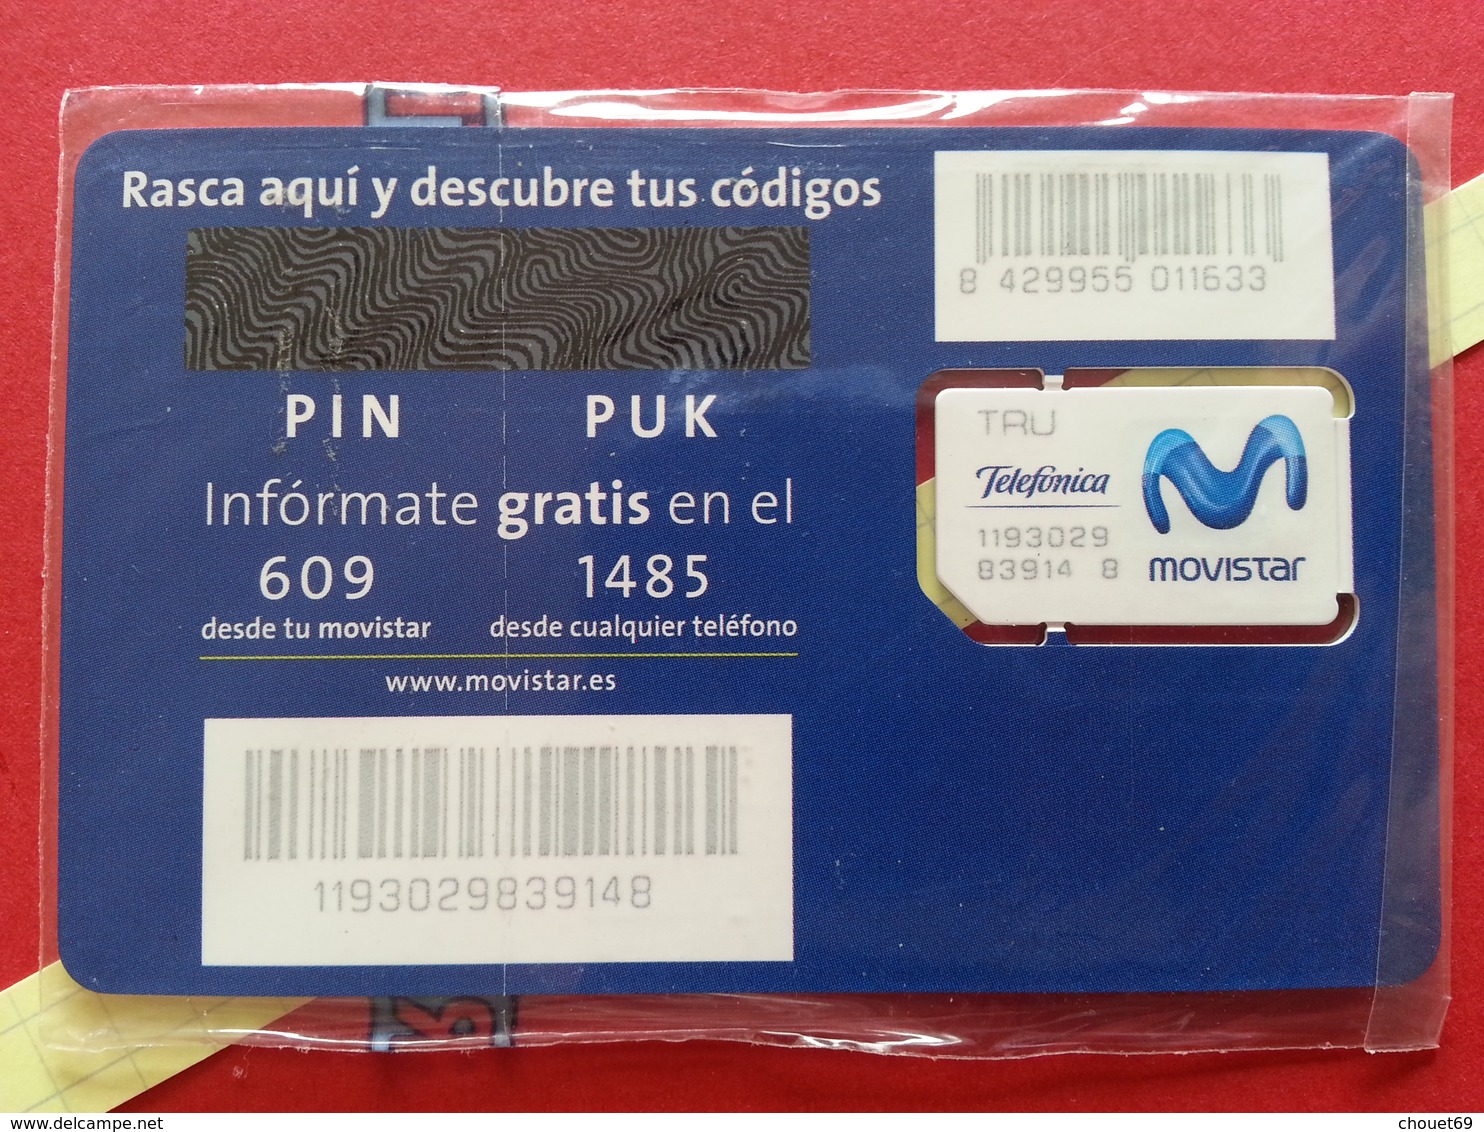 SPAIN SIM GSM Telefonica MoviStar Tarjeta Cut Chip 1 - Numbers Back - Blister TRU USIM RARE MINT (BH1219b - Telefonica